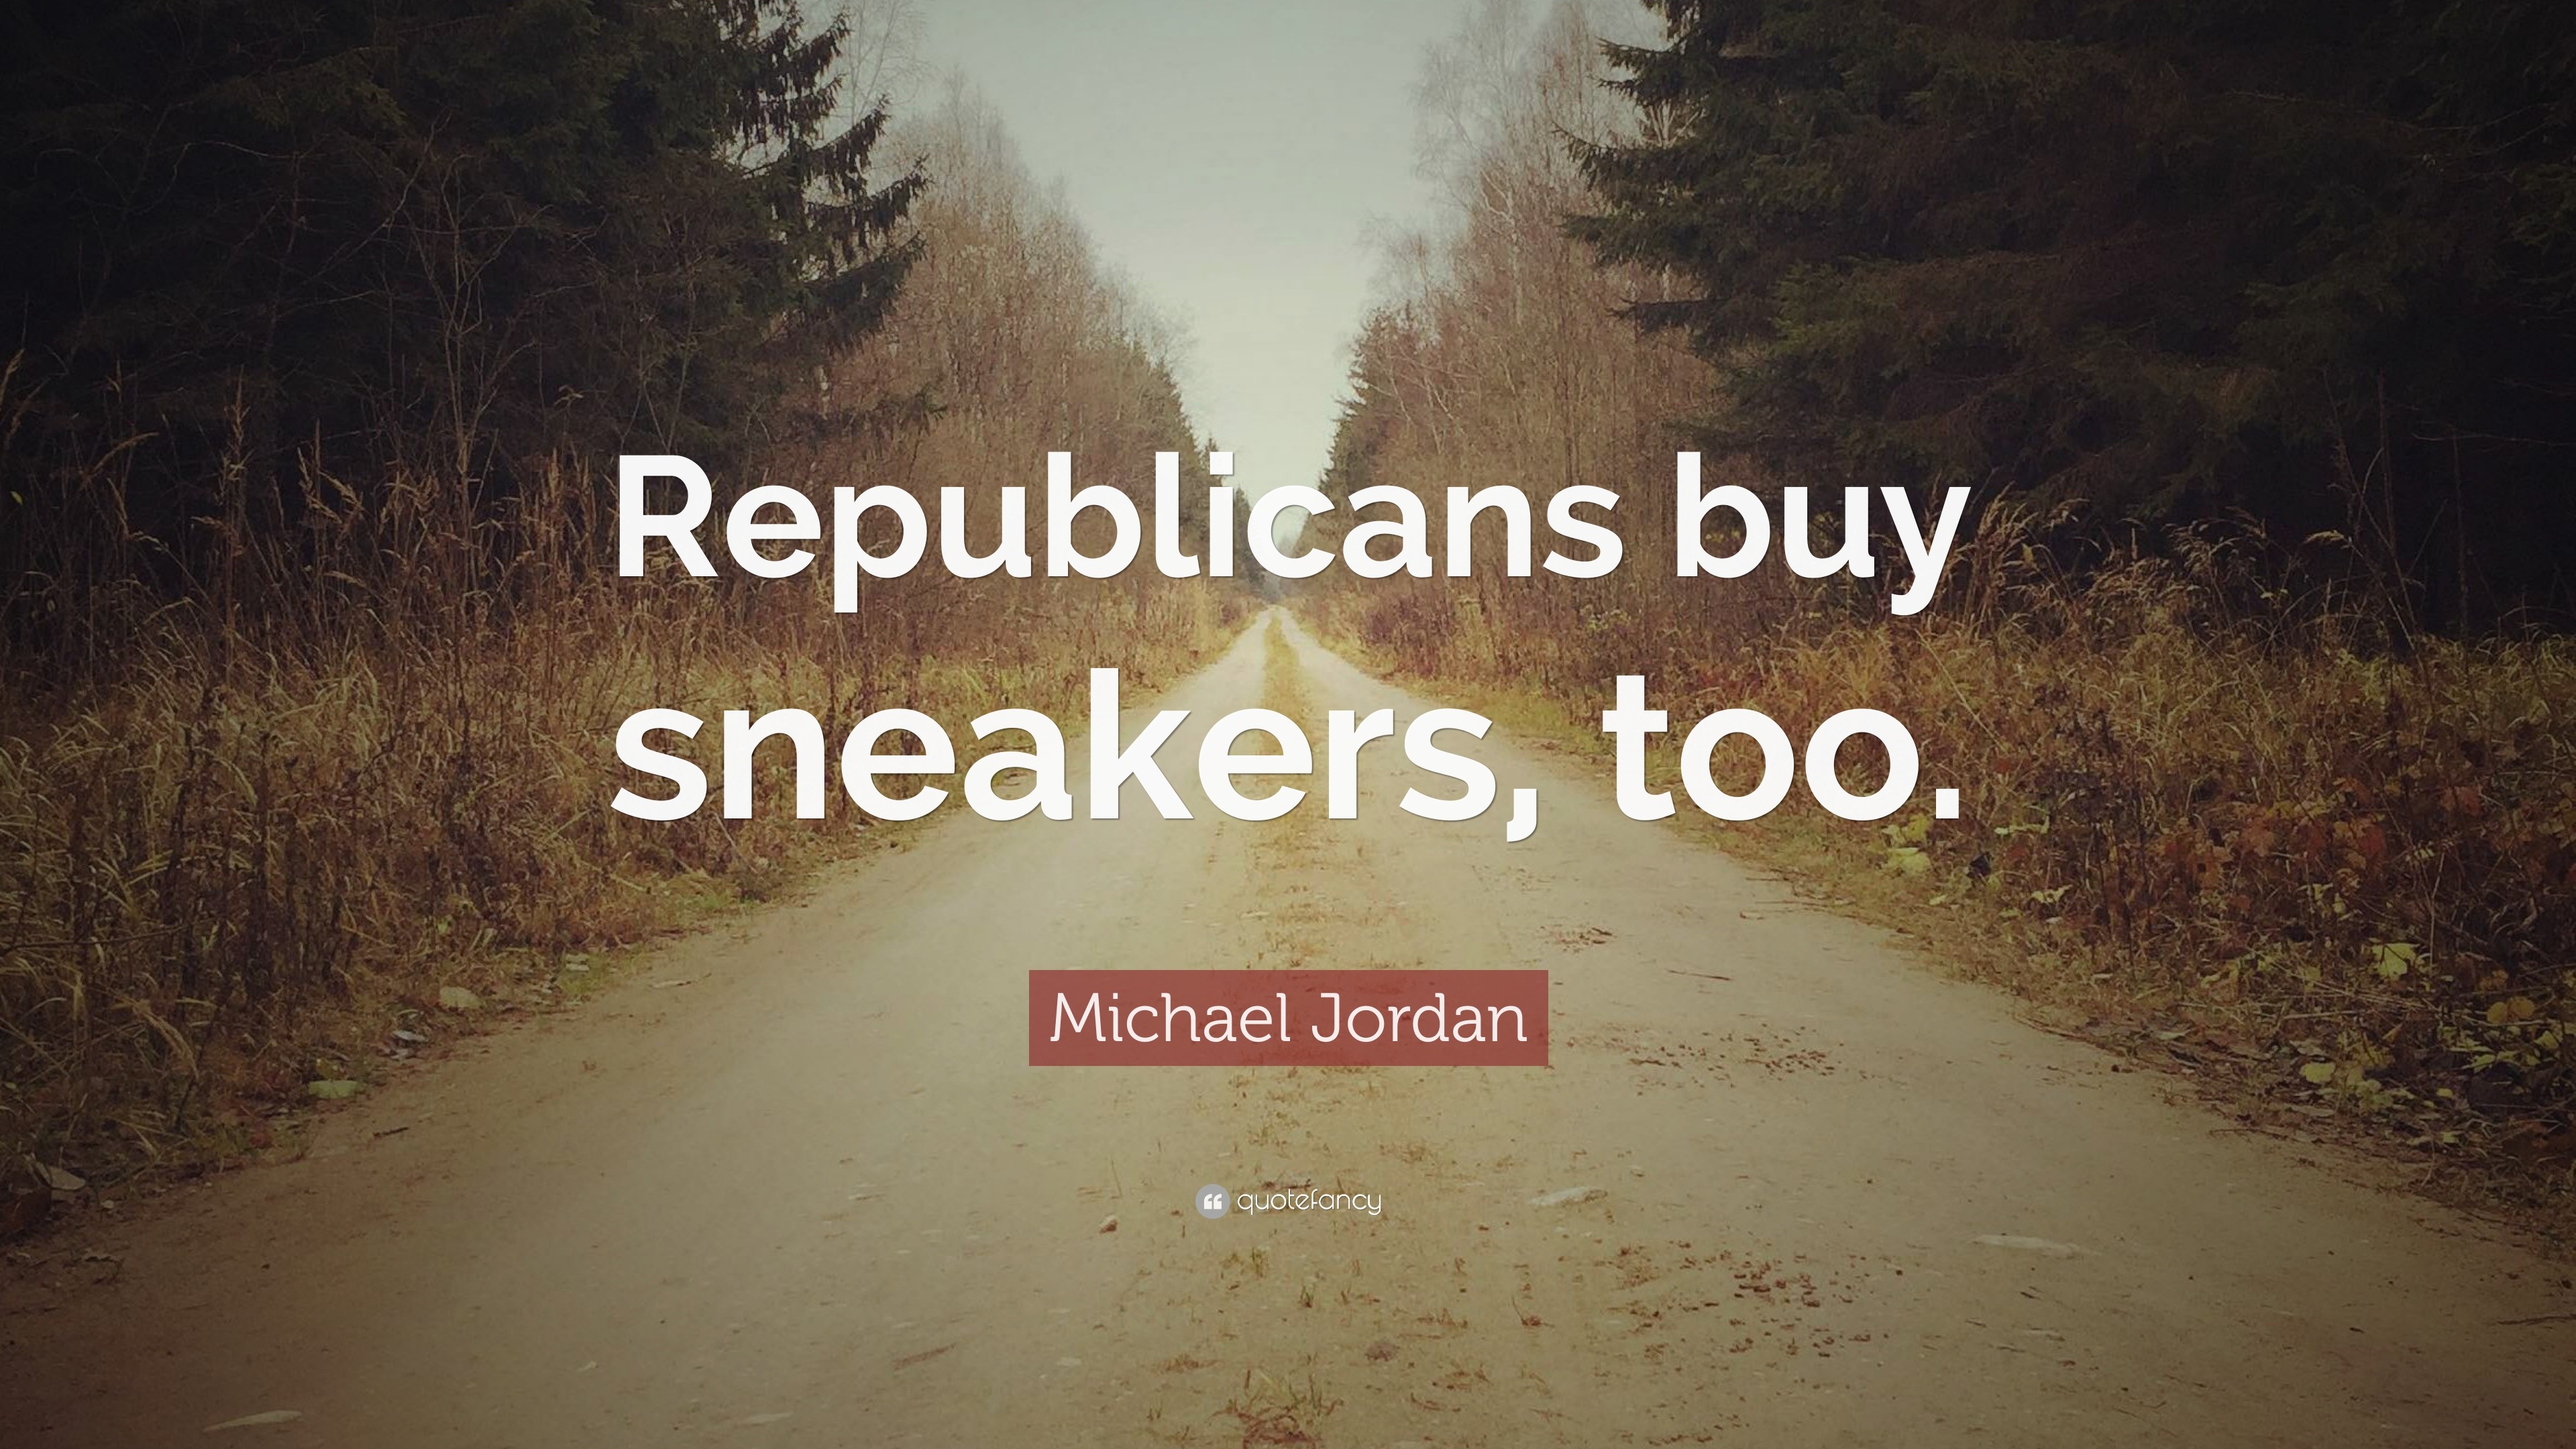 michael jordan republicans buy sneakers